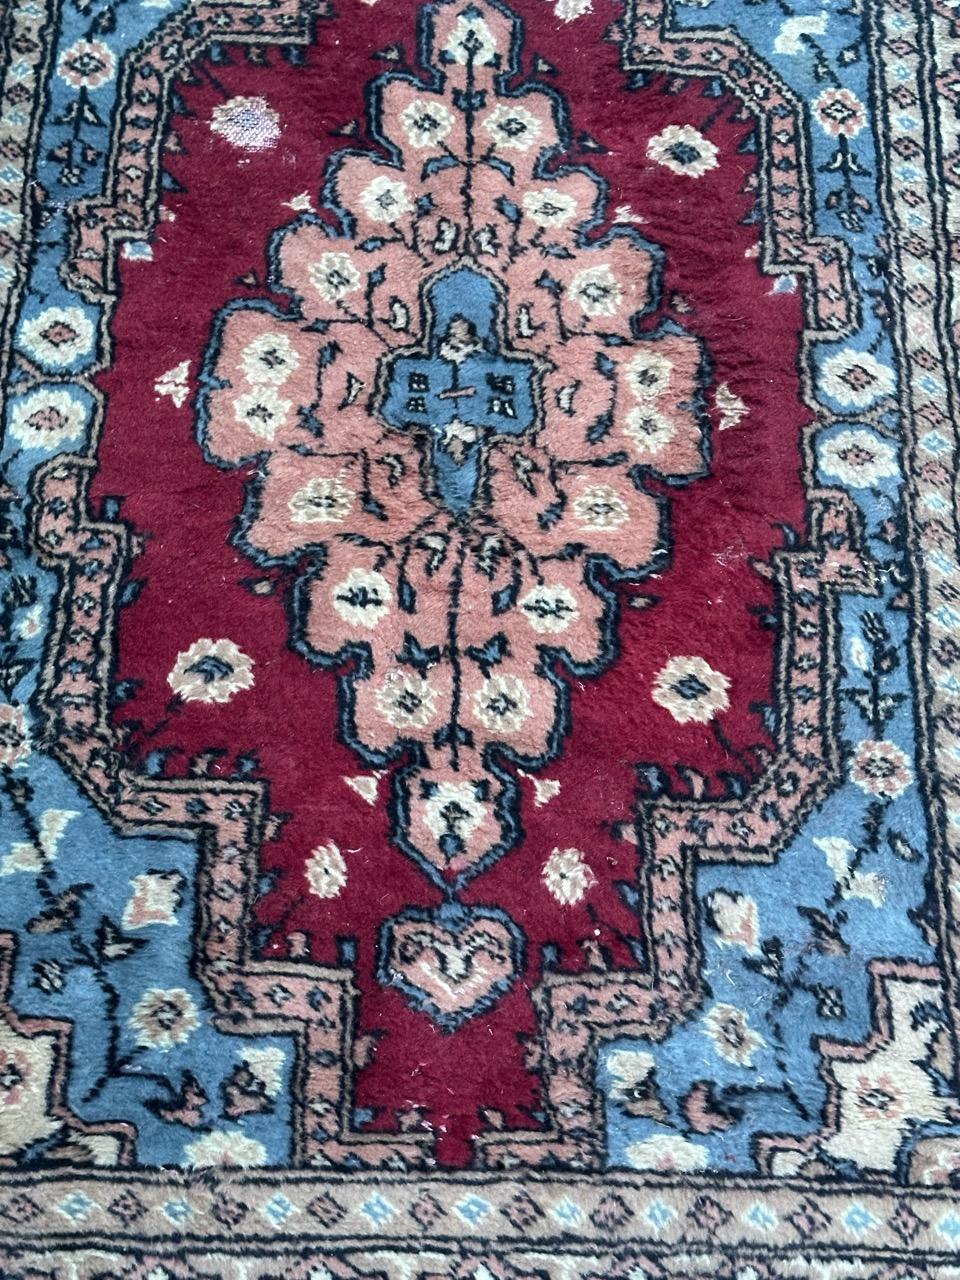 Schöner pakistanischer Teppich aus dem späten 20. Jahrhundert mit einem turkmenischen Stammesmuster und schönen Farben mit einem Blau,  rot  und orange . Vollständig handgeknüpft mit Wolle auf Baumwollbasis.
Einige Abnutzungen durch den Gebrauch und